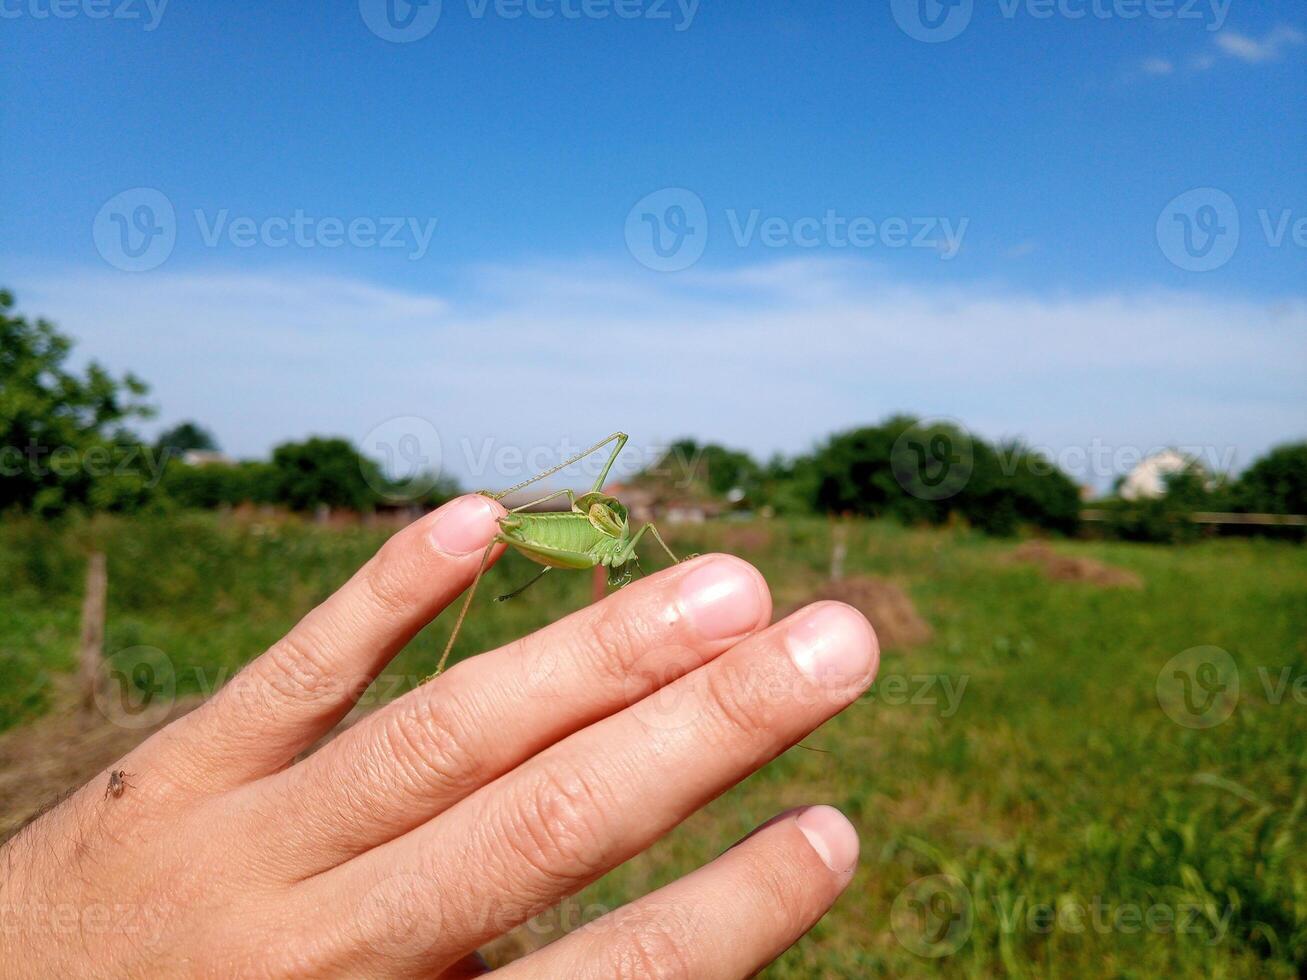 sauterelle isofie sur mans main. isophage insecte. photo